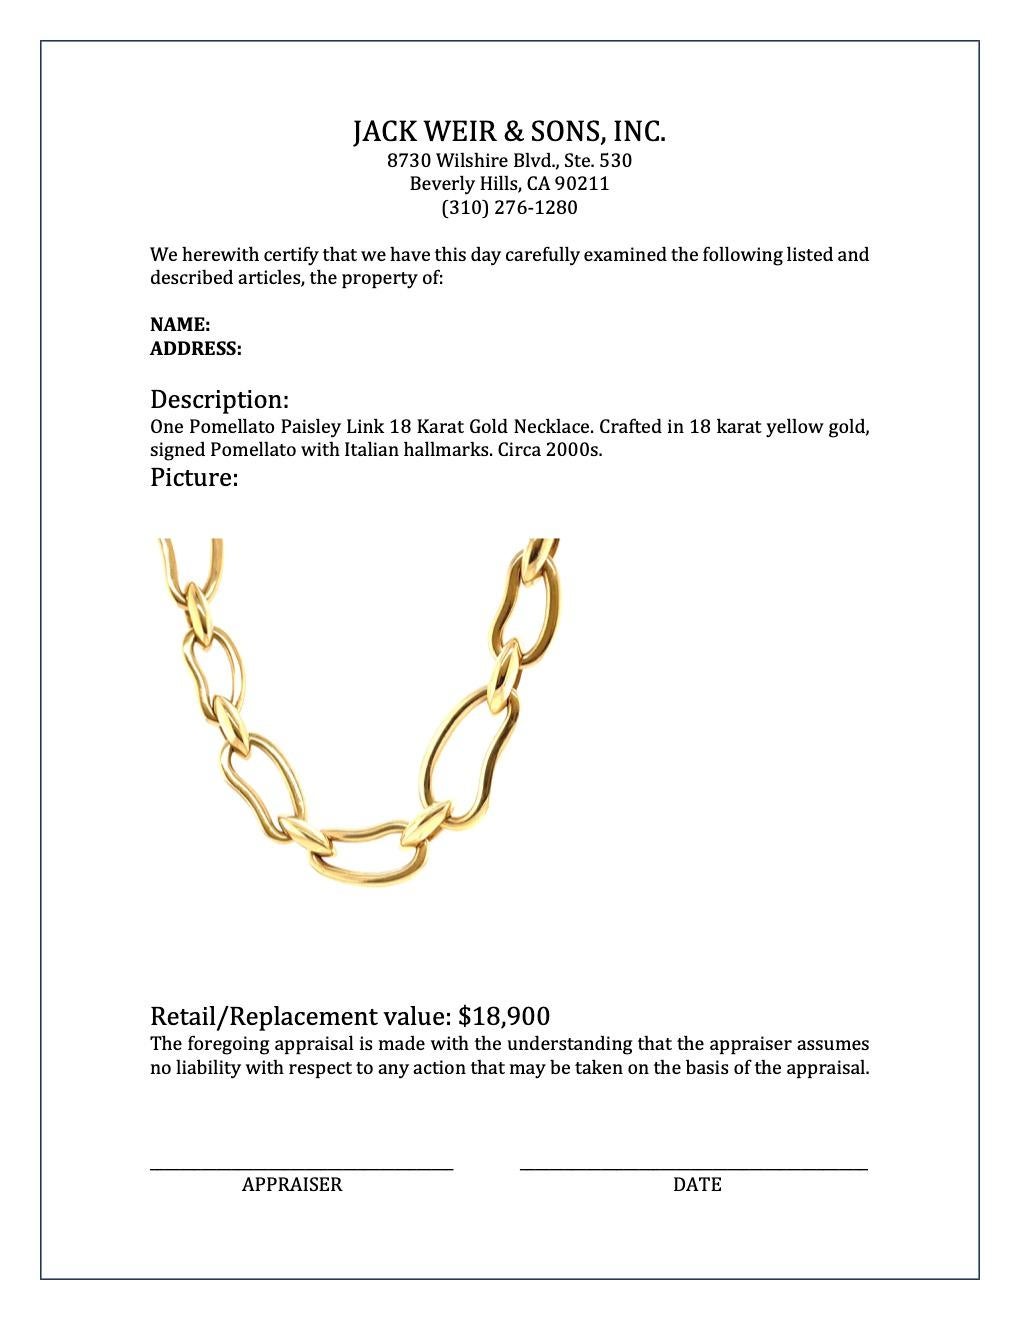 Pomellato Paisley Link 18 Karat Gold Necklace 3